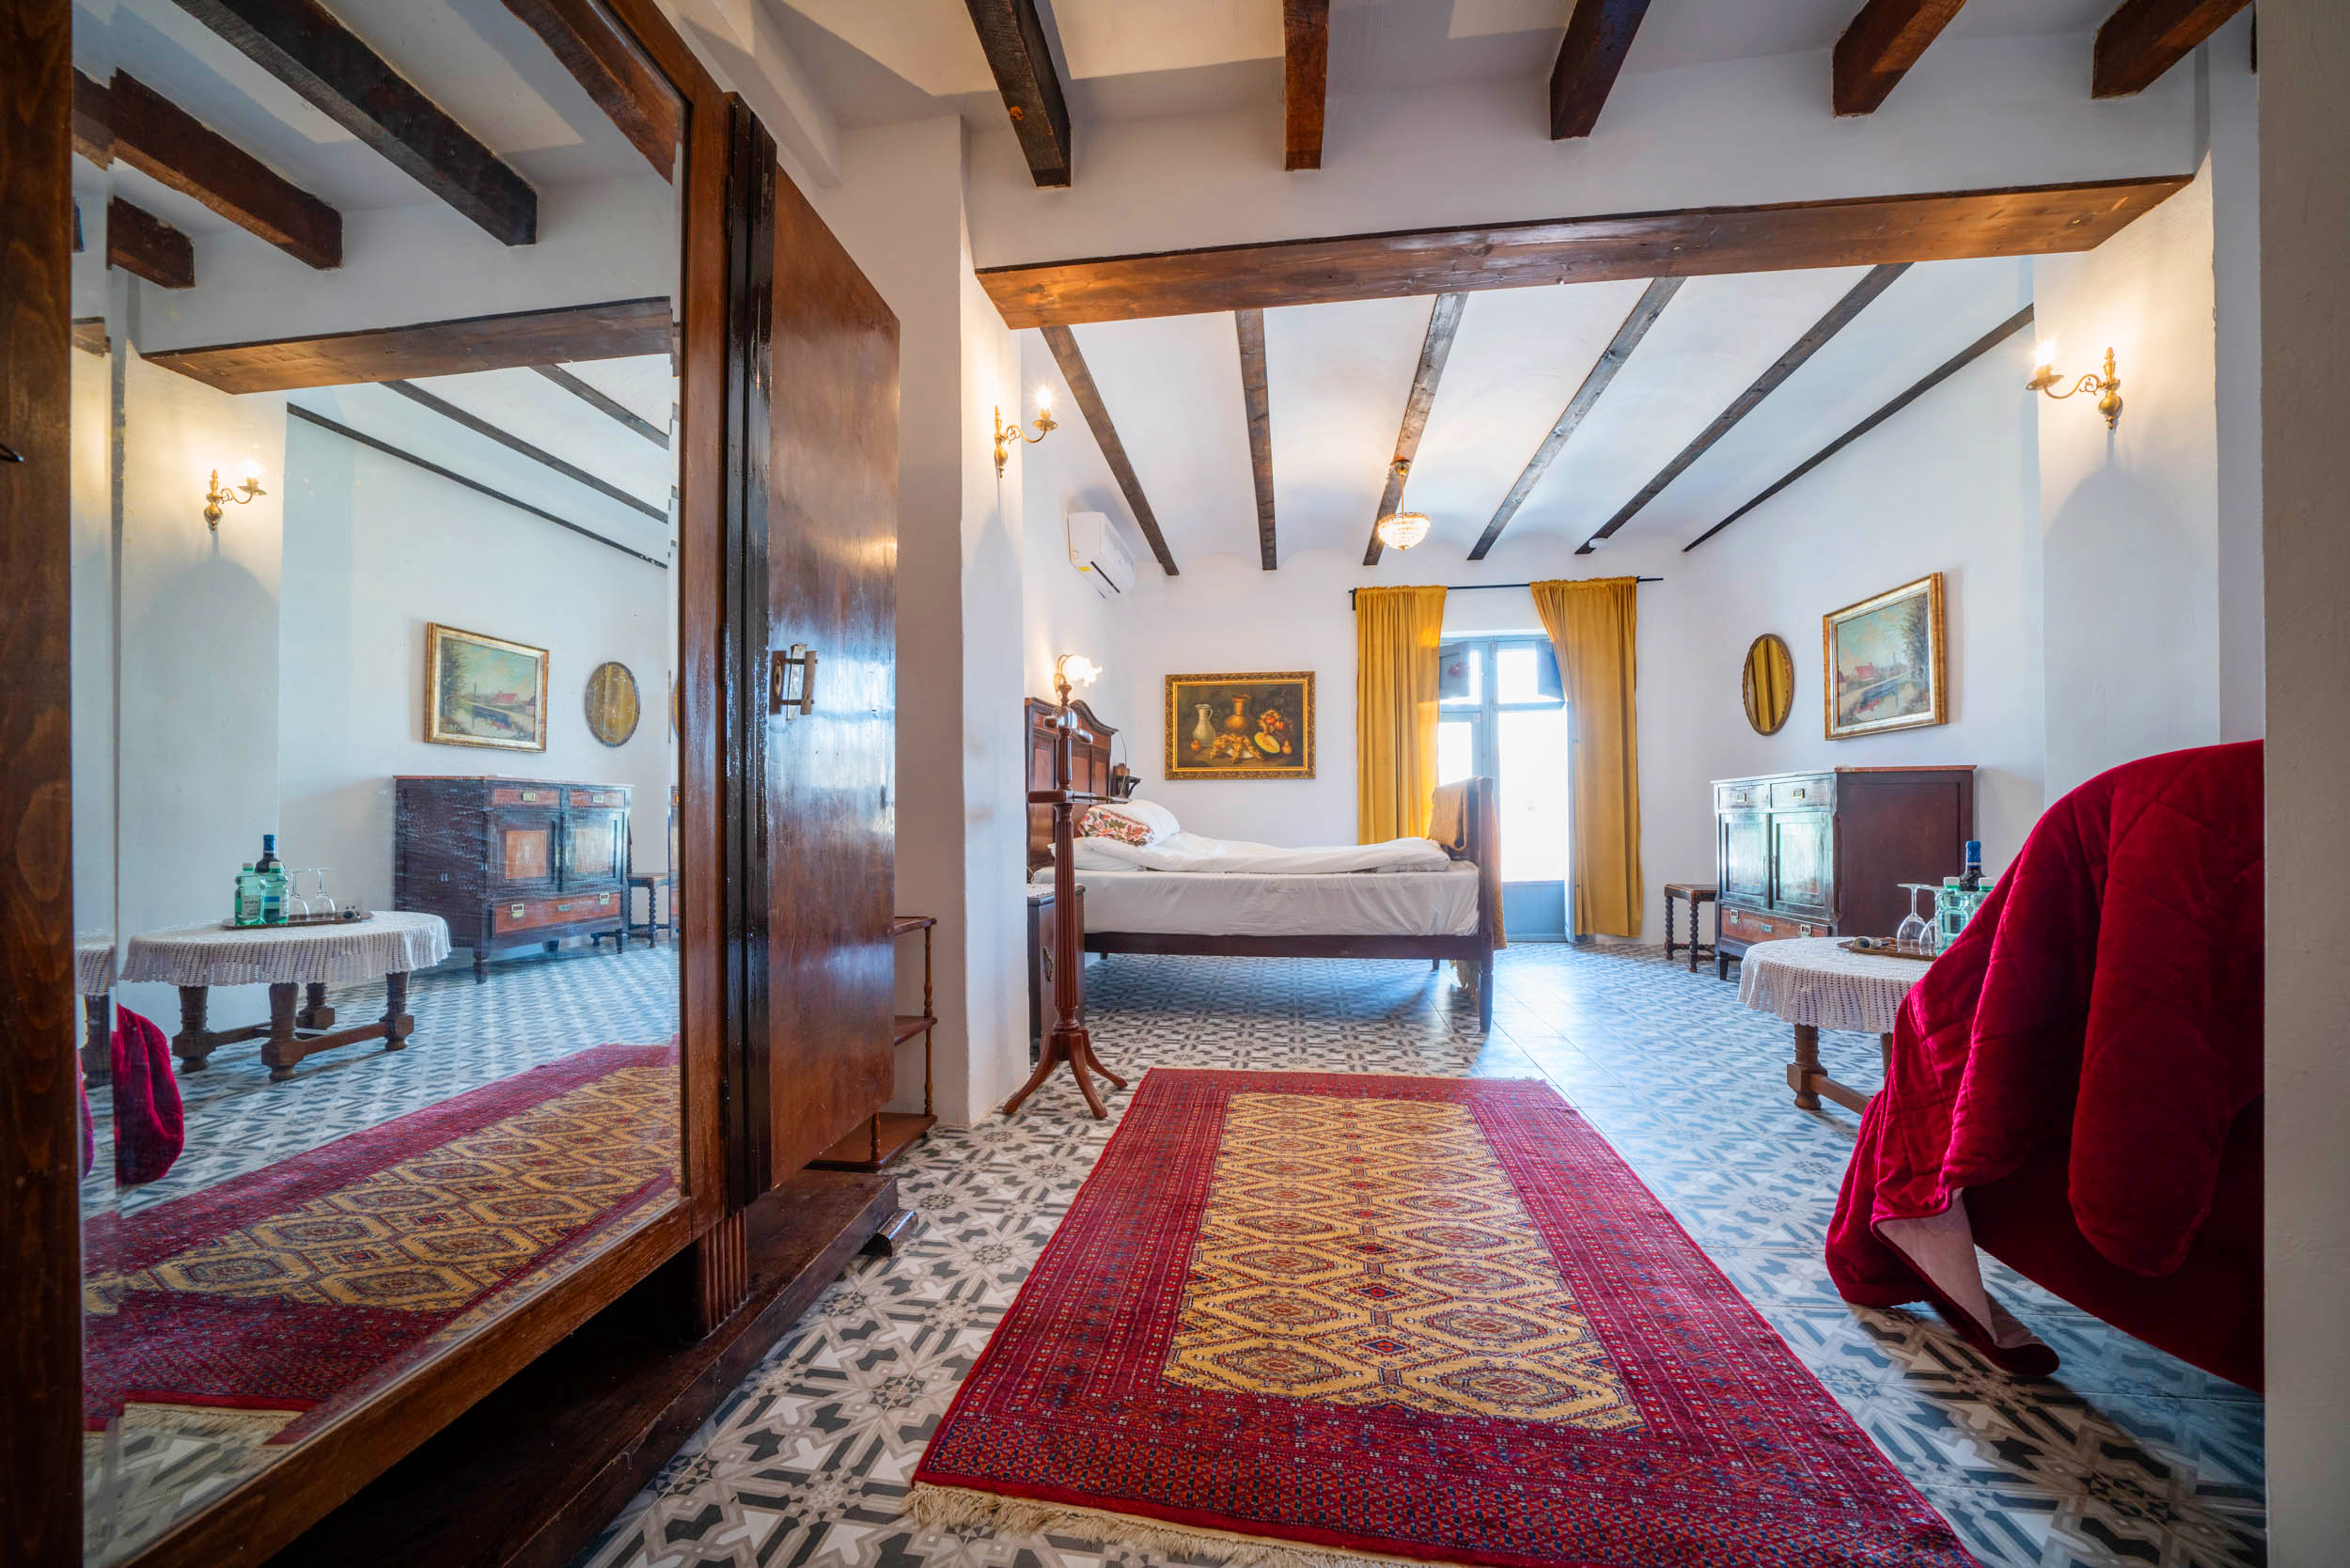 Rum 6 med liten balkong, AC, eget badrum med värmegolv och inredning traditionel spans stil